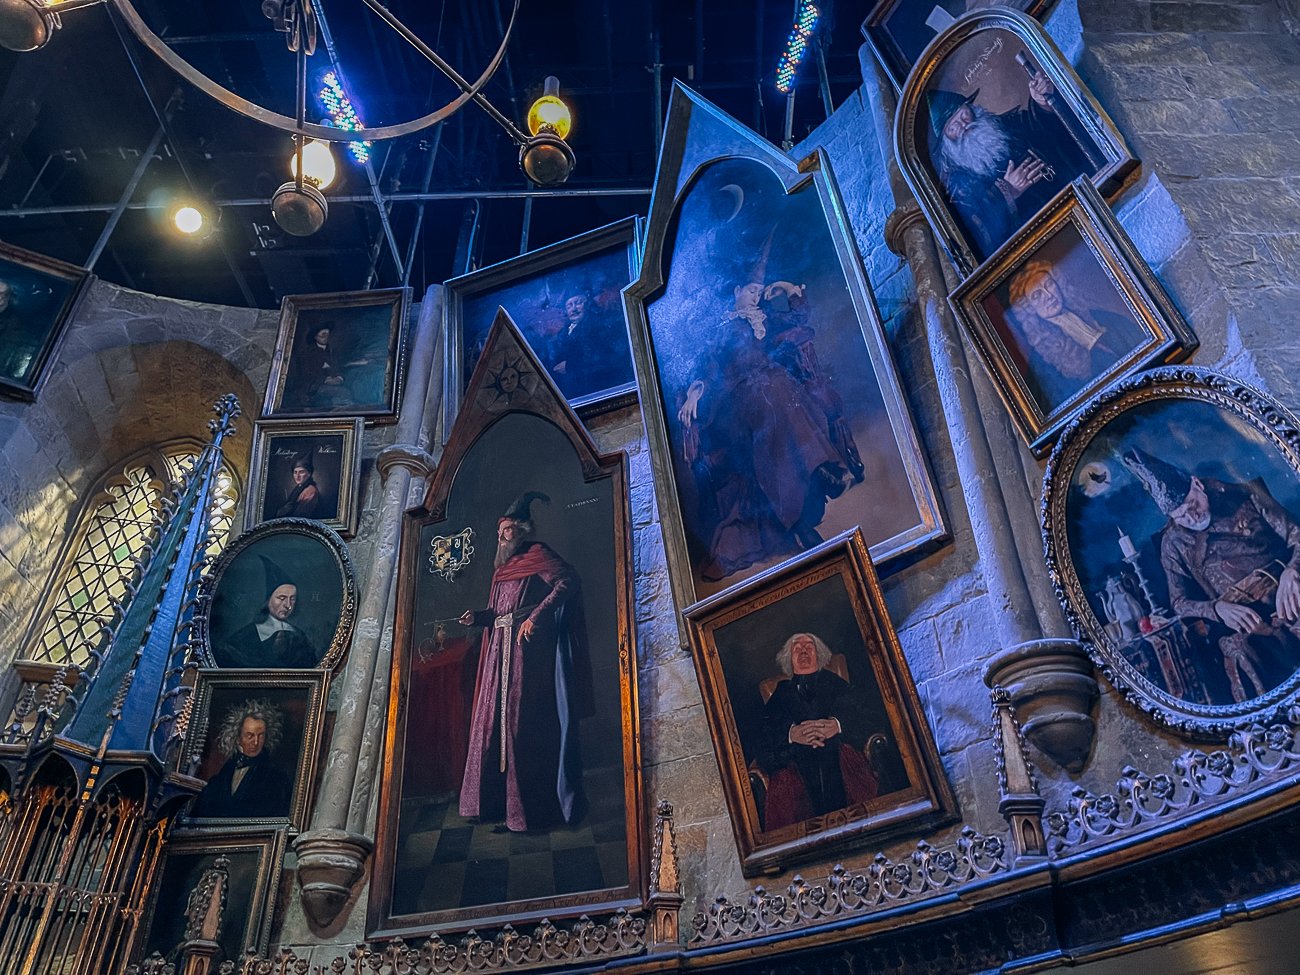 Dumbledore's office portraits at Harry Potter studio tour